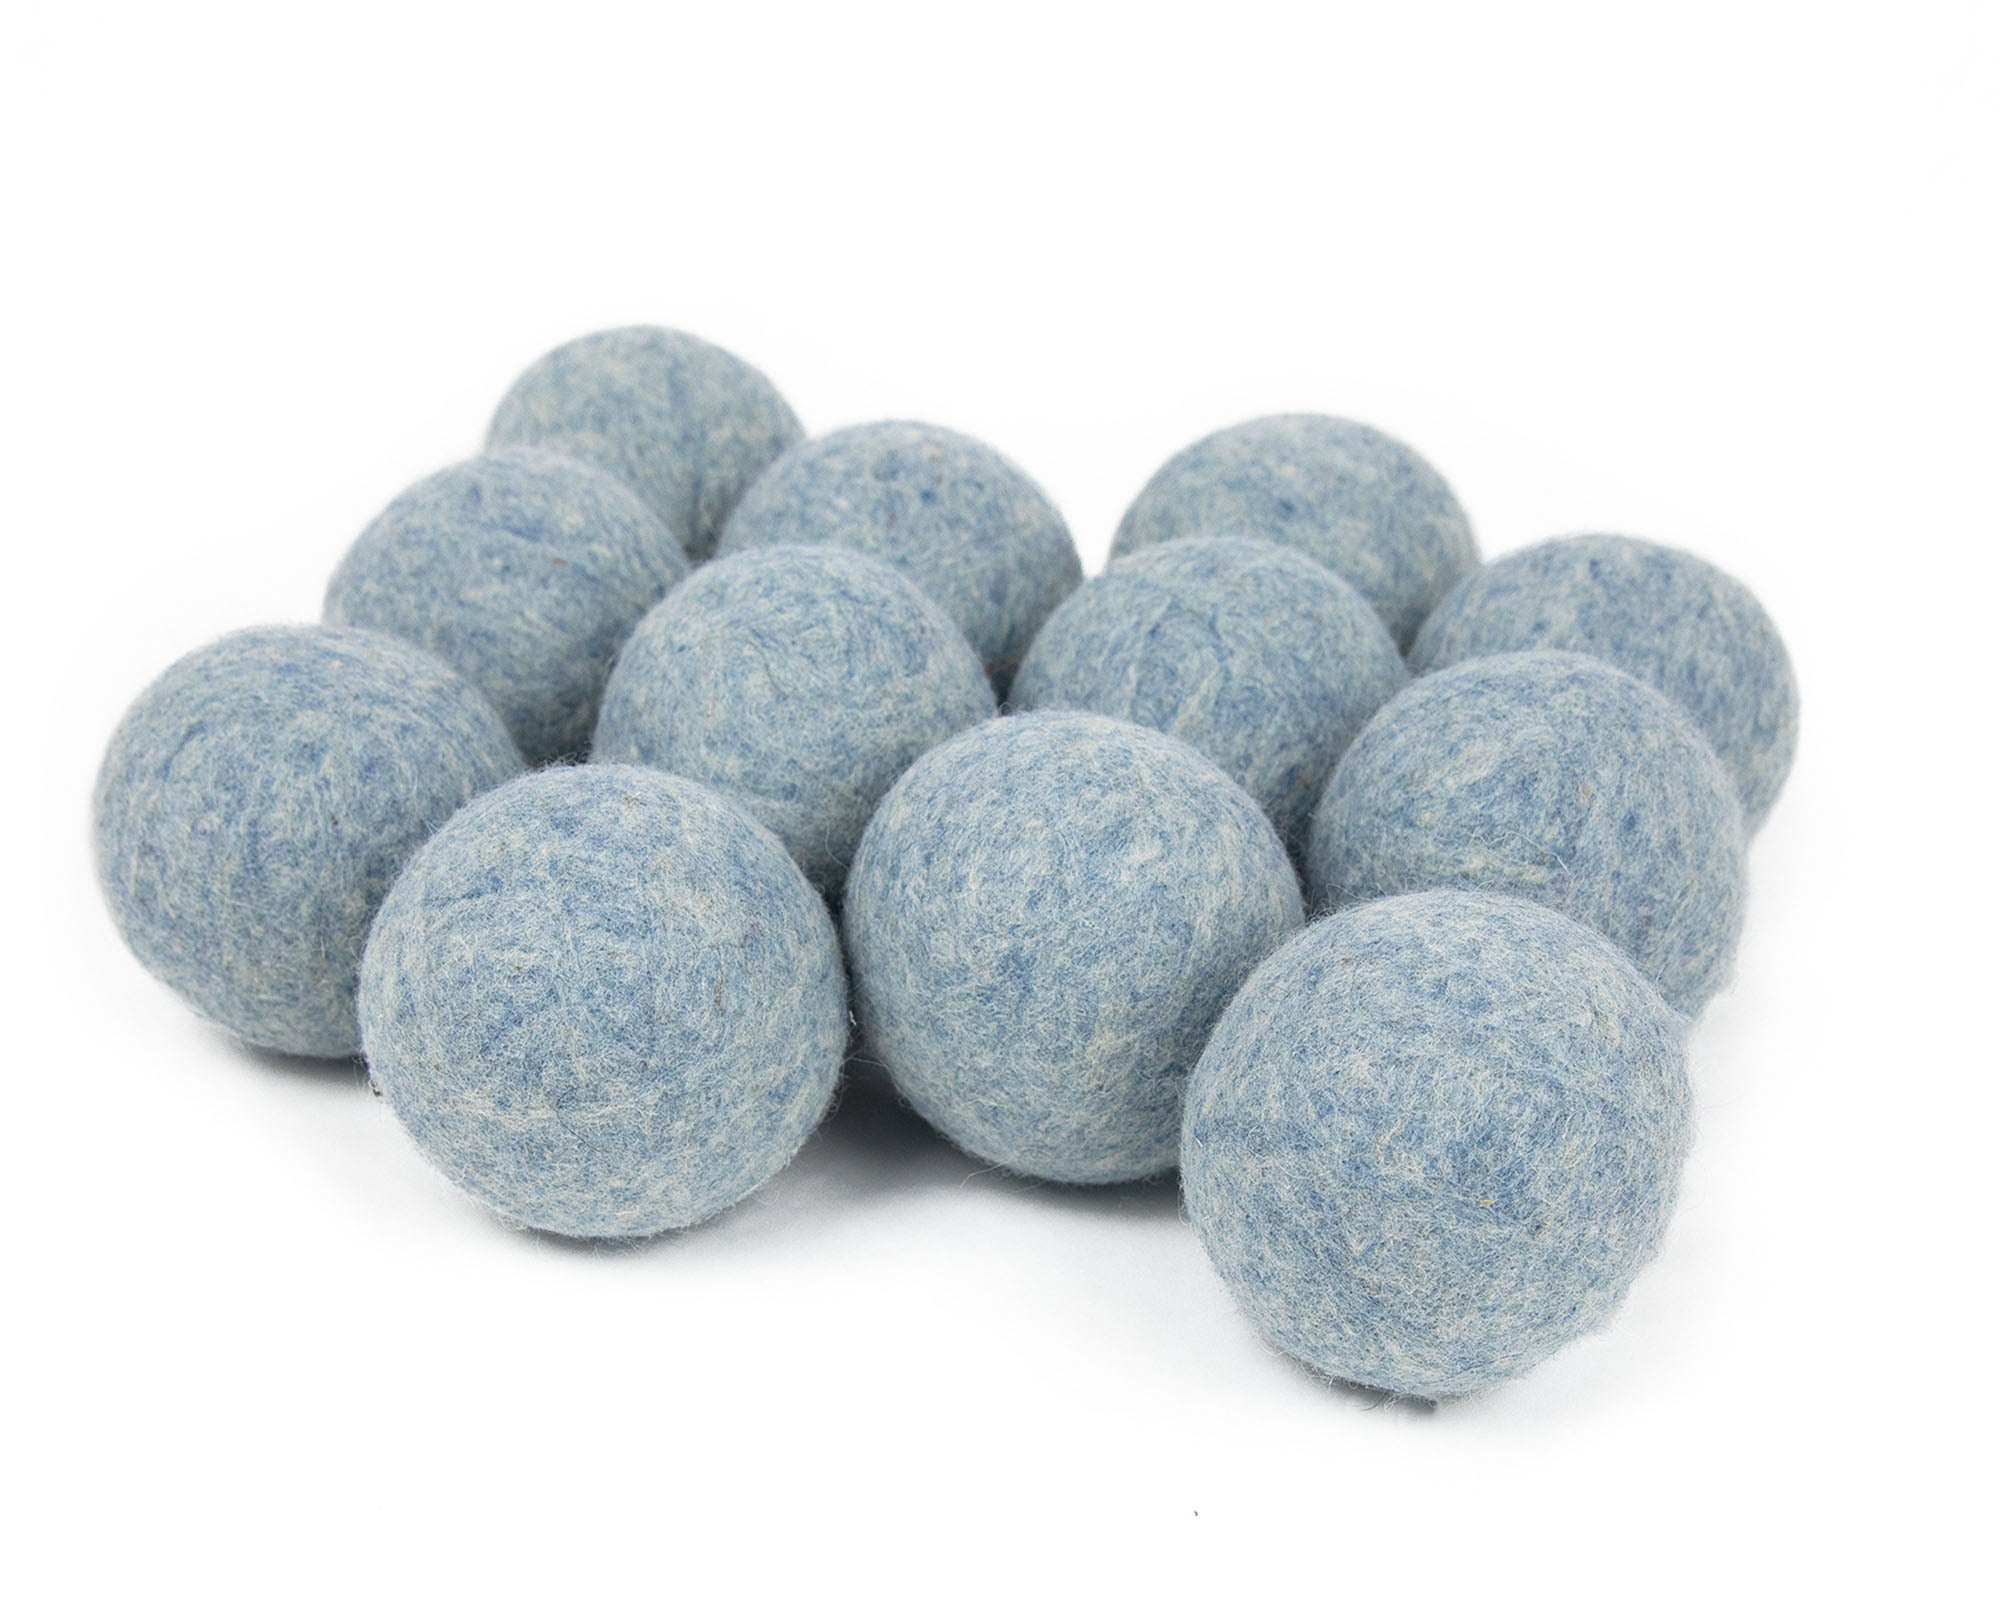 Wool Dryer Balls | Deluxe 12-Pack